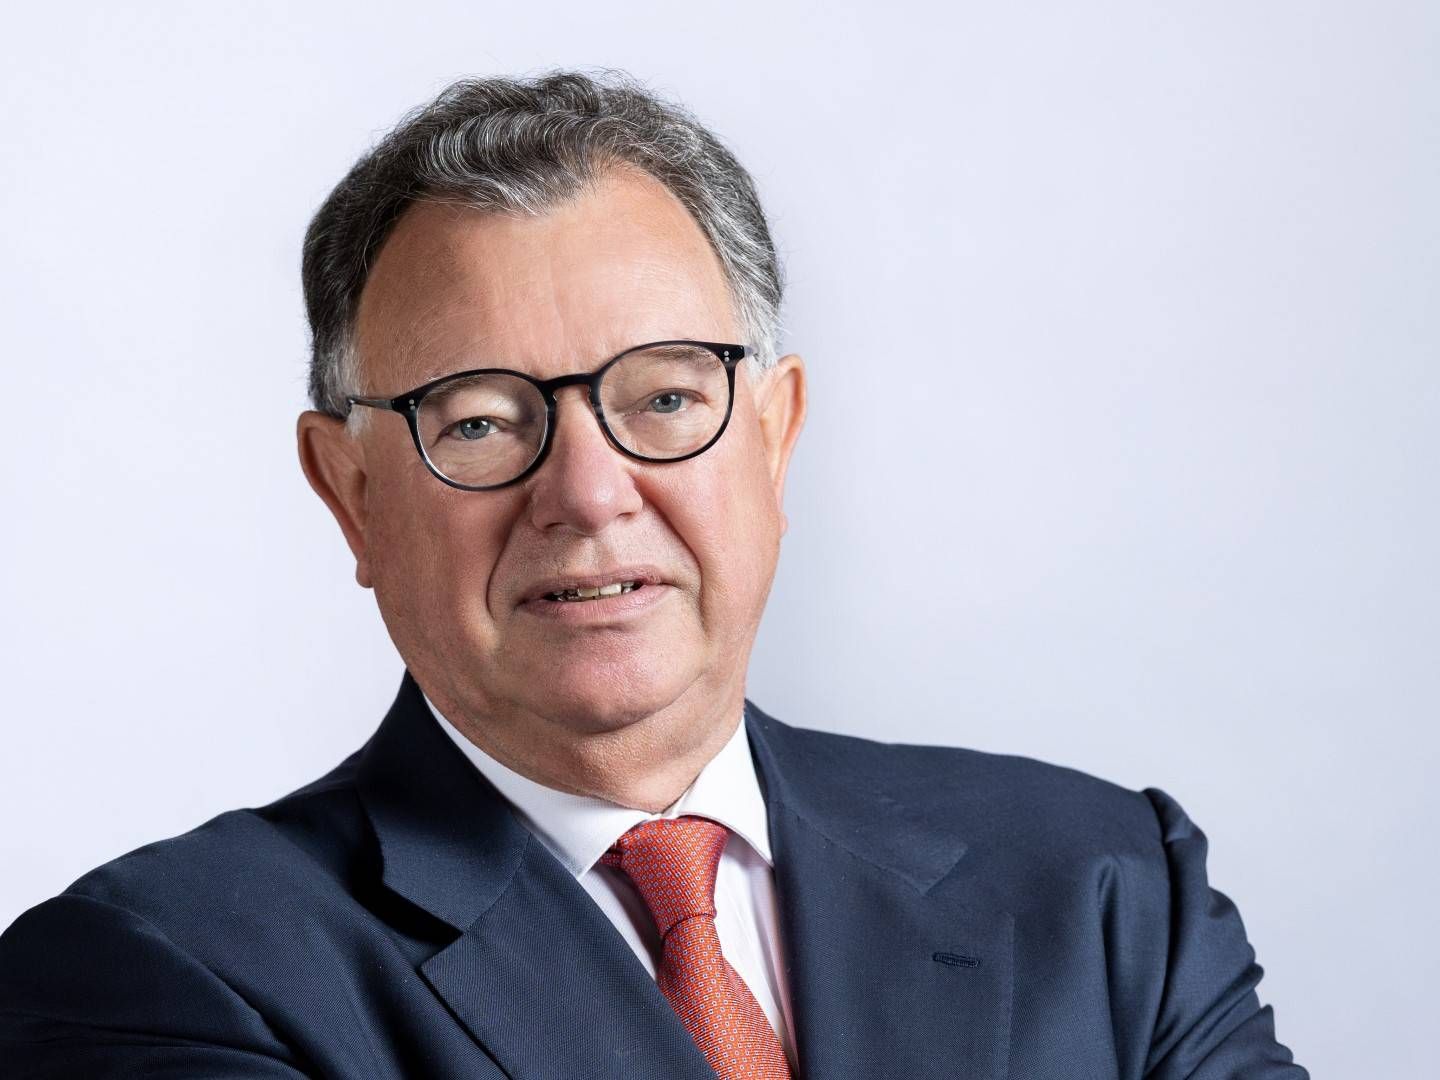 Reto Francioni ist neuer Aufsichtsratschef der UBS Europe | Foto: UBS Europe